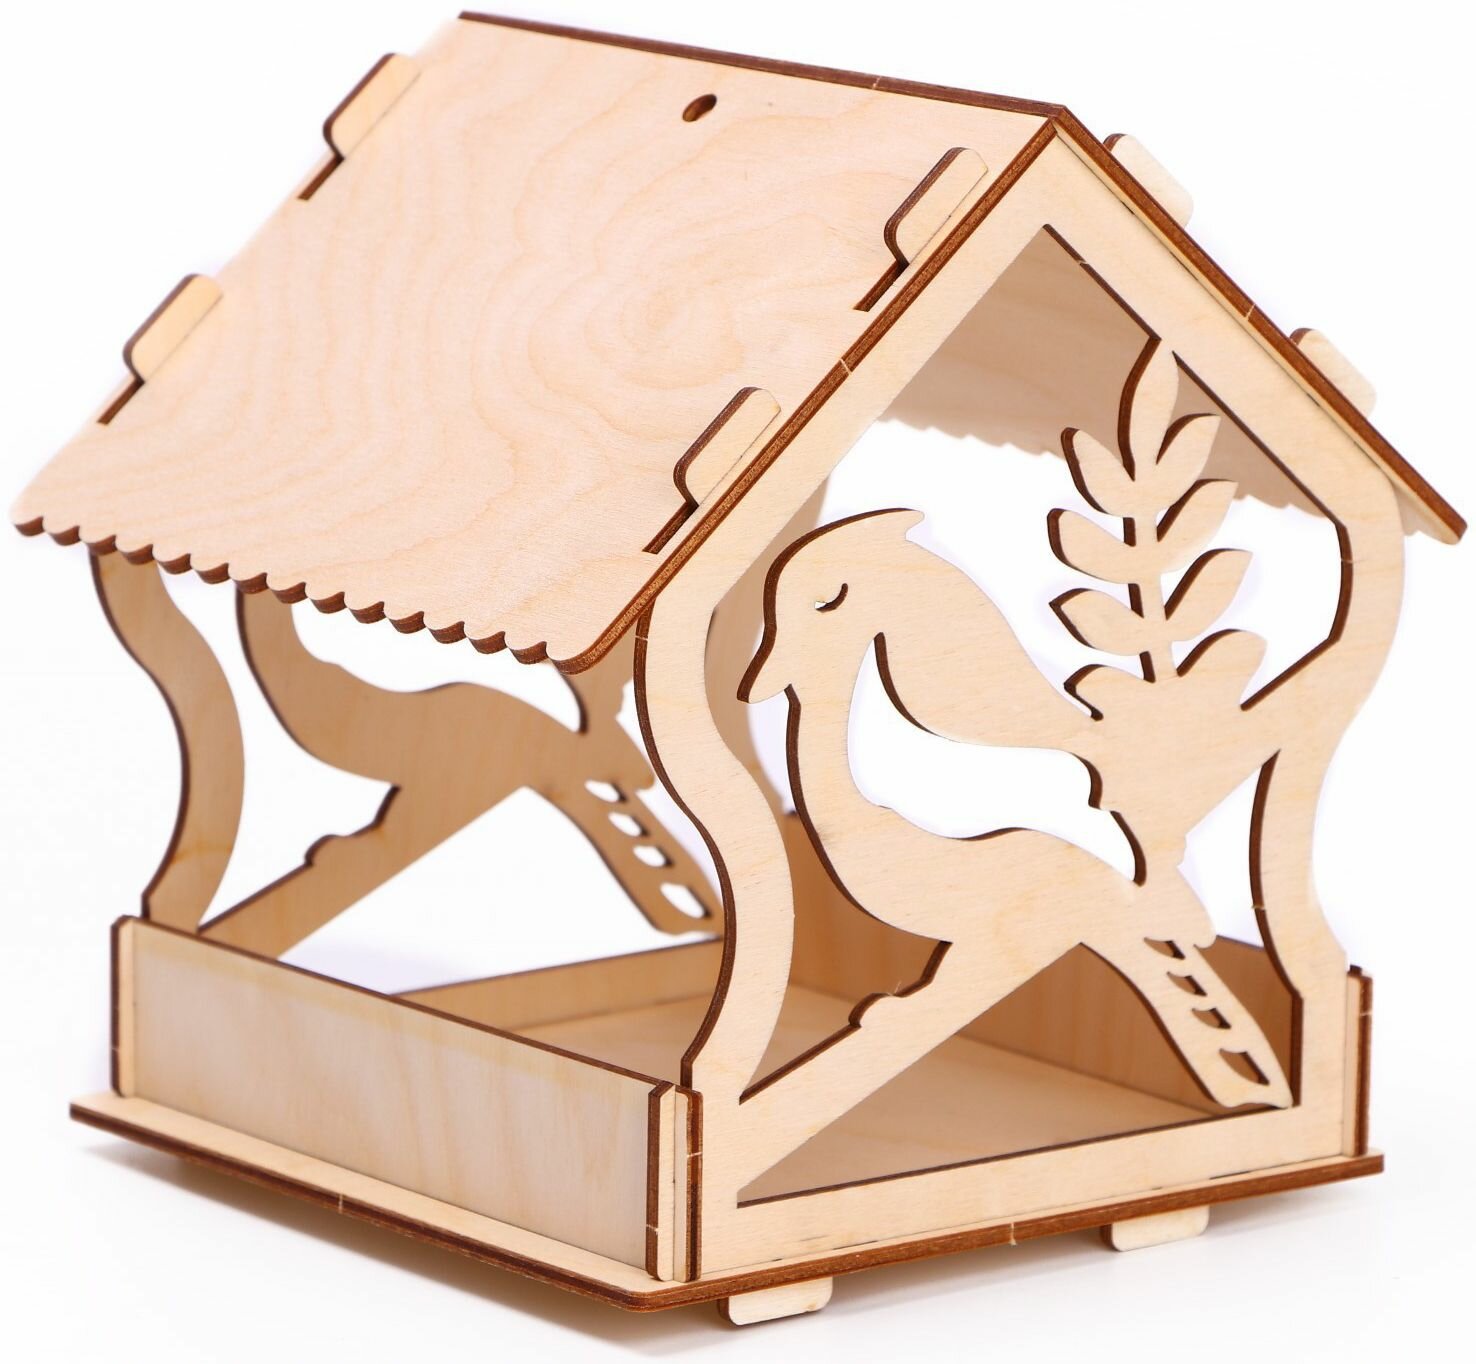 Развивающий деревянный набор-скворечник "Птица", кормушка - конструктор, сборная модель-заготовка для детского творчества, 7 деталей